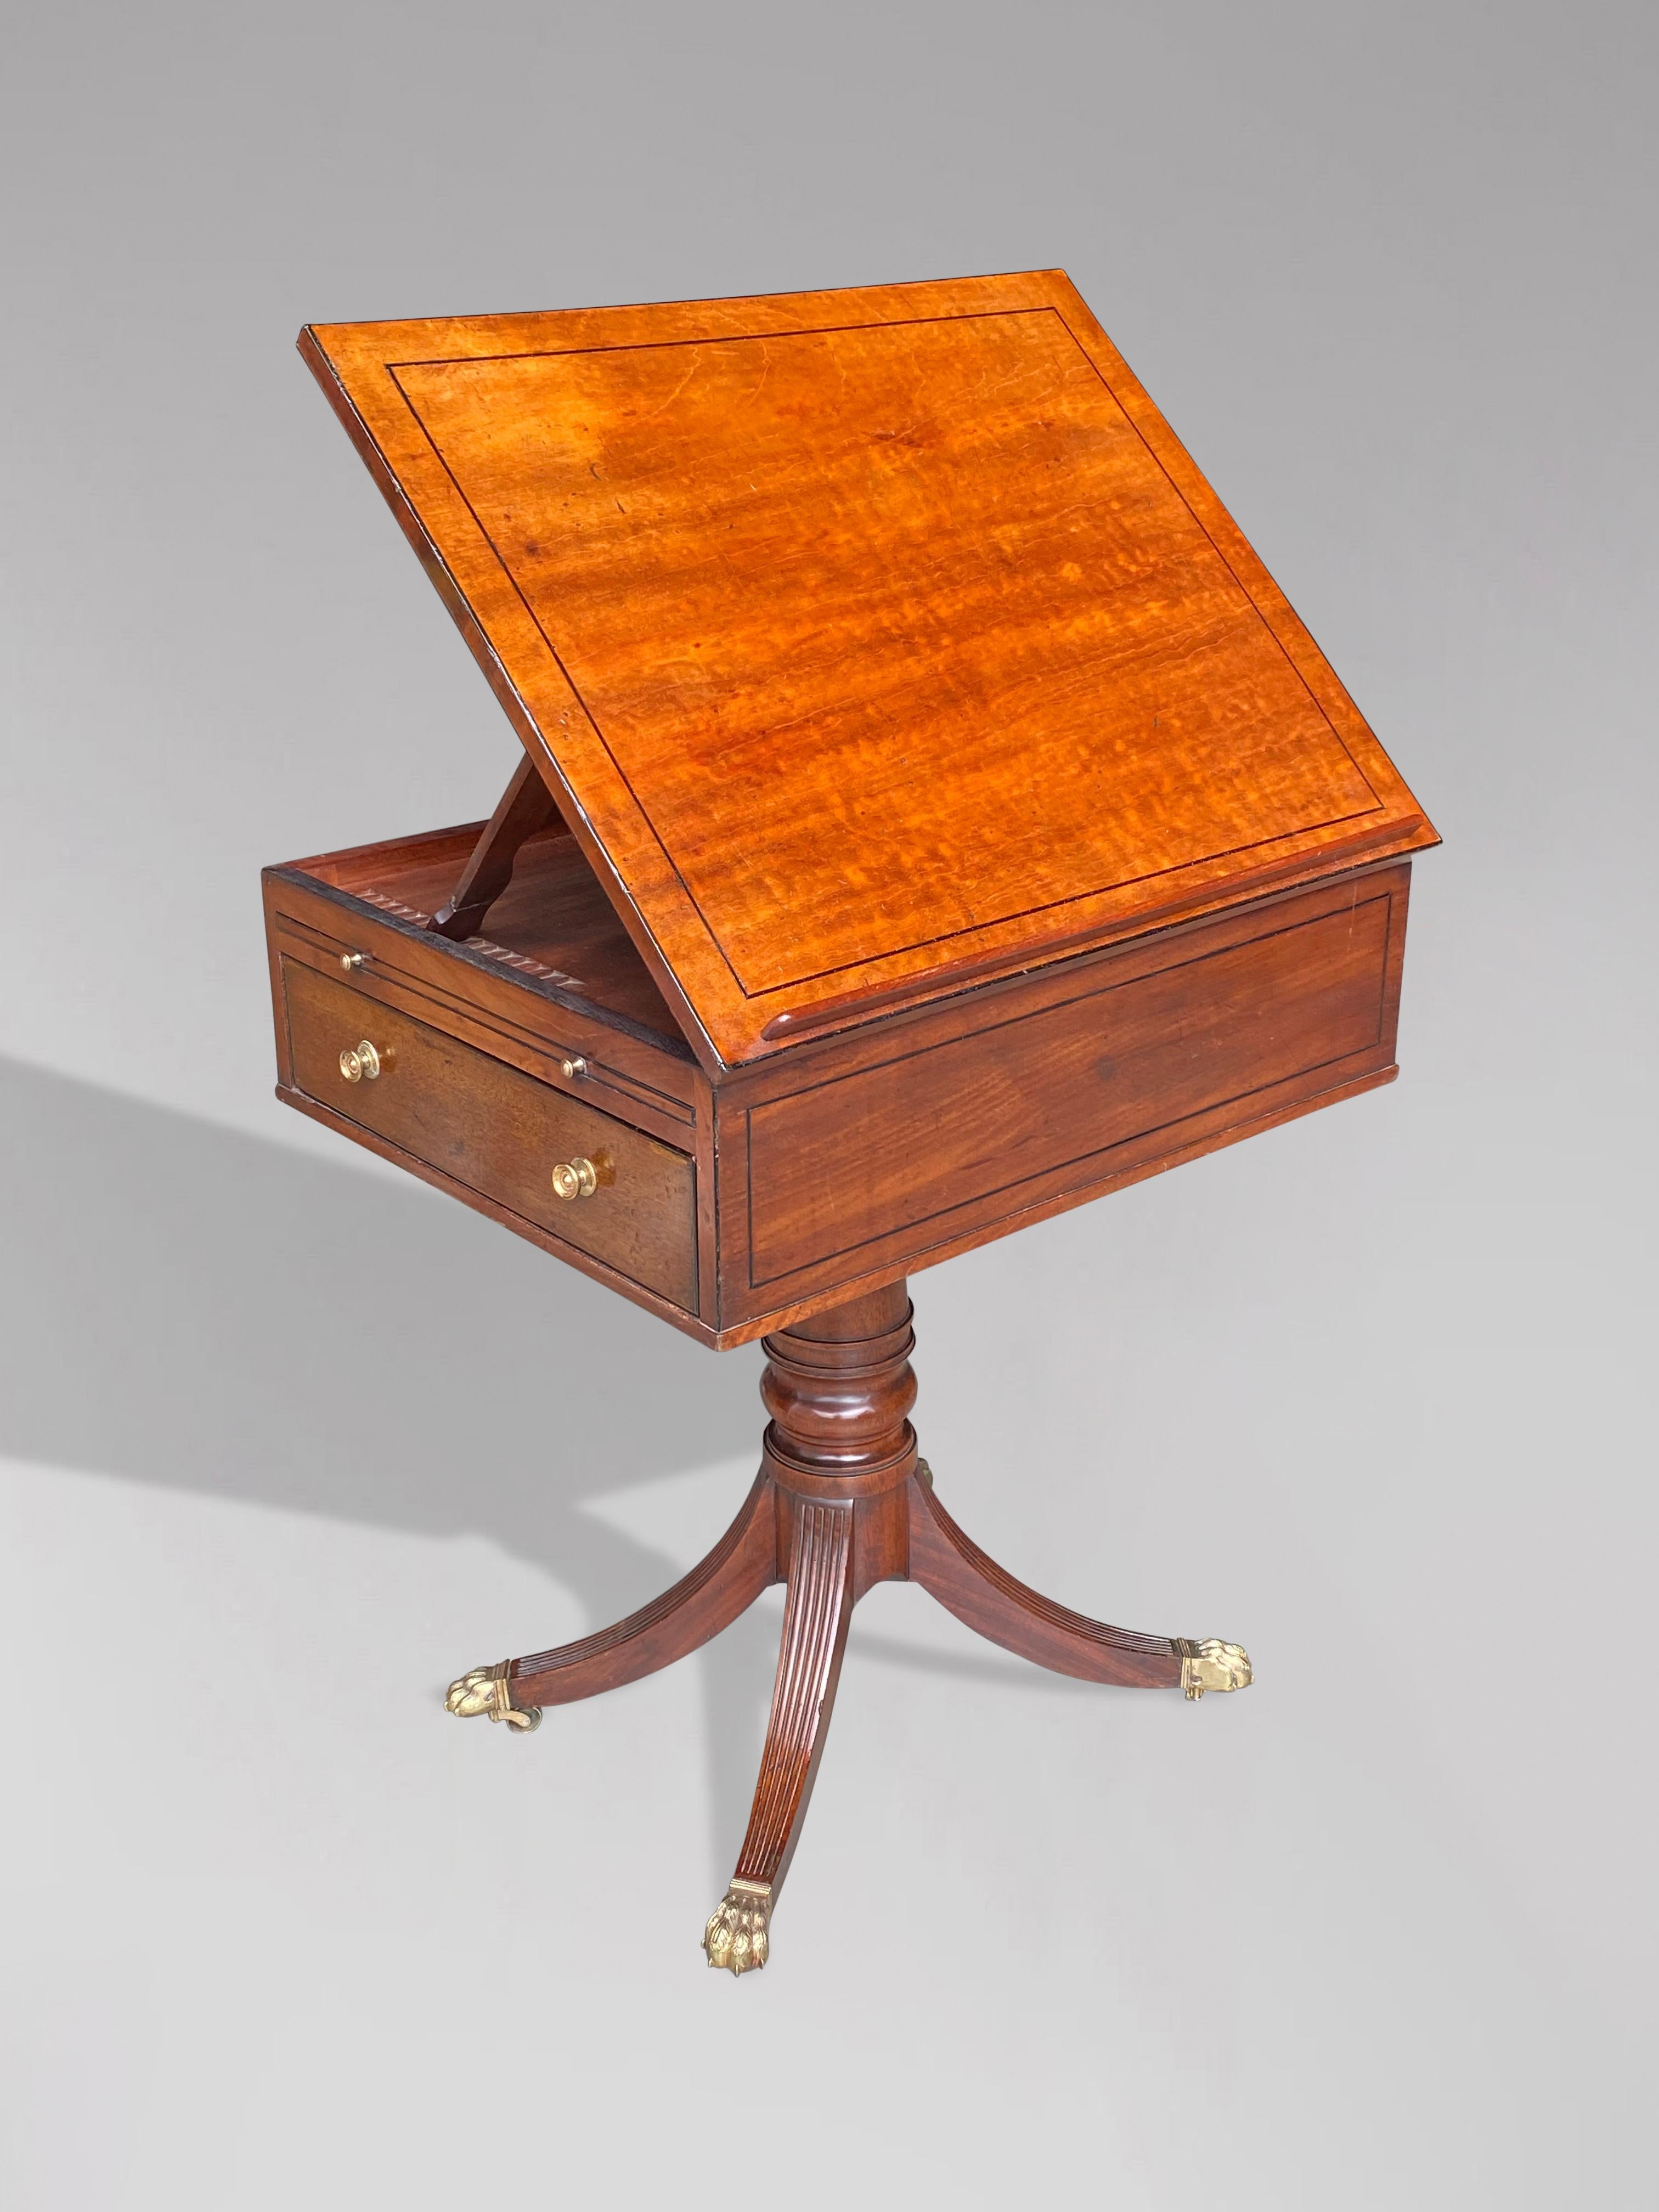 Table de lecture en acajou et incrustation d'ébène du début du 19e siècle, d'époque George III. La table est dotée d'un faux tiroir sur un côté et d'une pente de lecture ascendante et descendante. L'un des côtés de la table comporte un tiroir et une